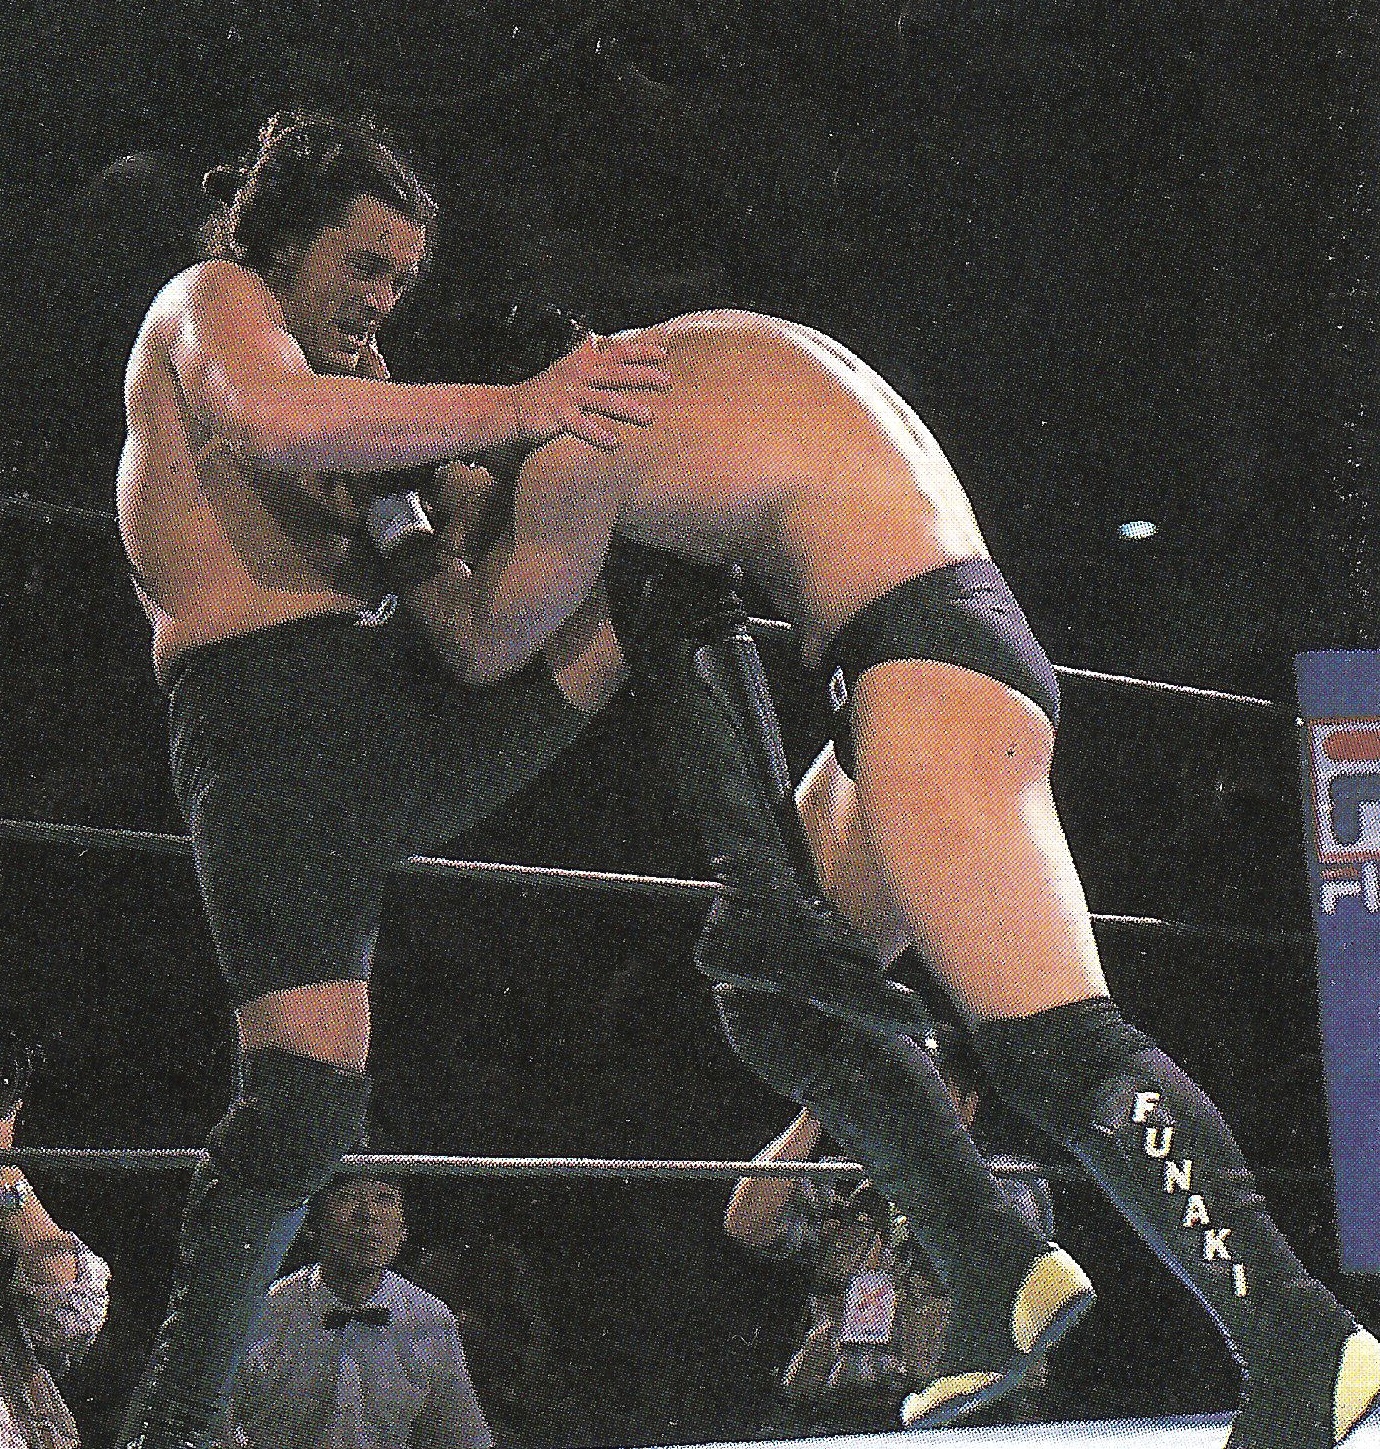 Battling King of Pancrase Masakatsu Funaki in Nagoya, Japan (1997)